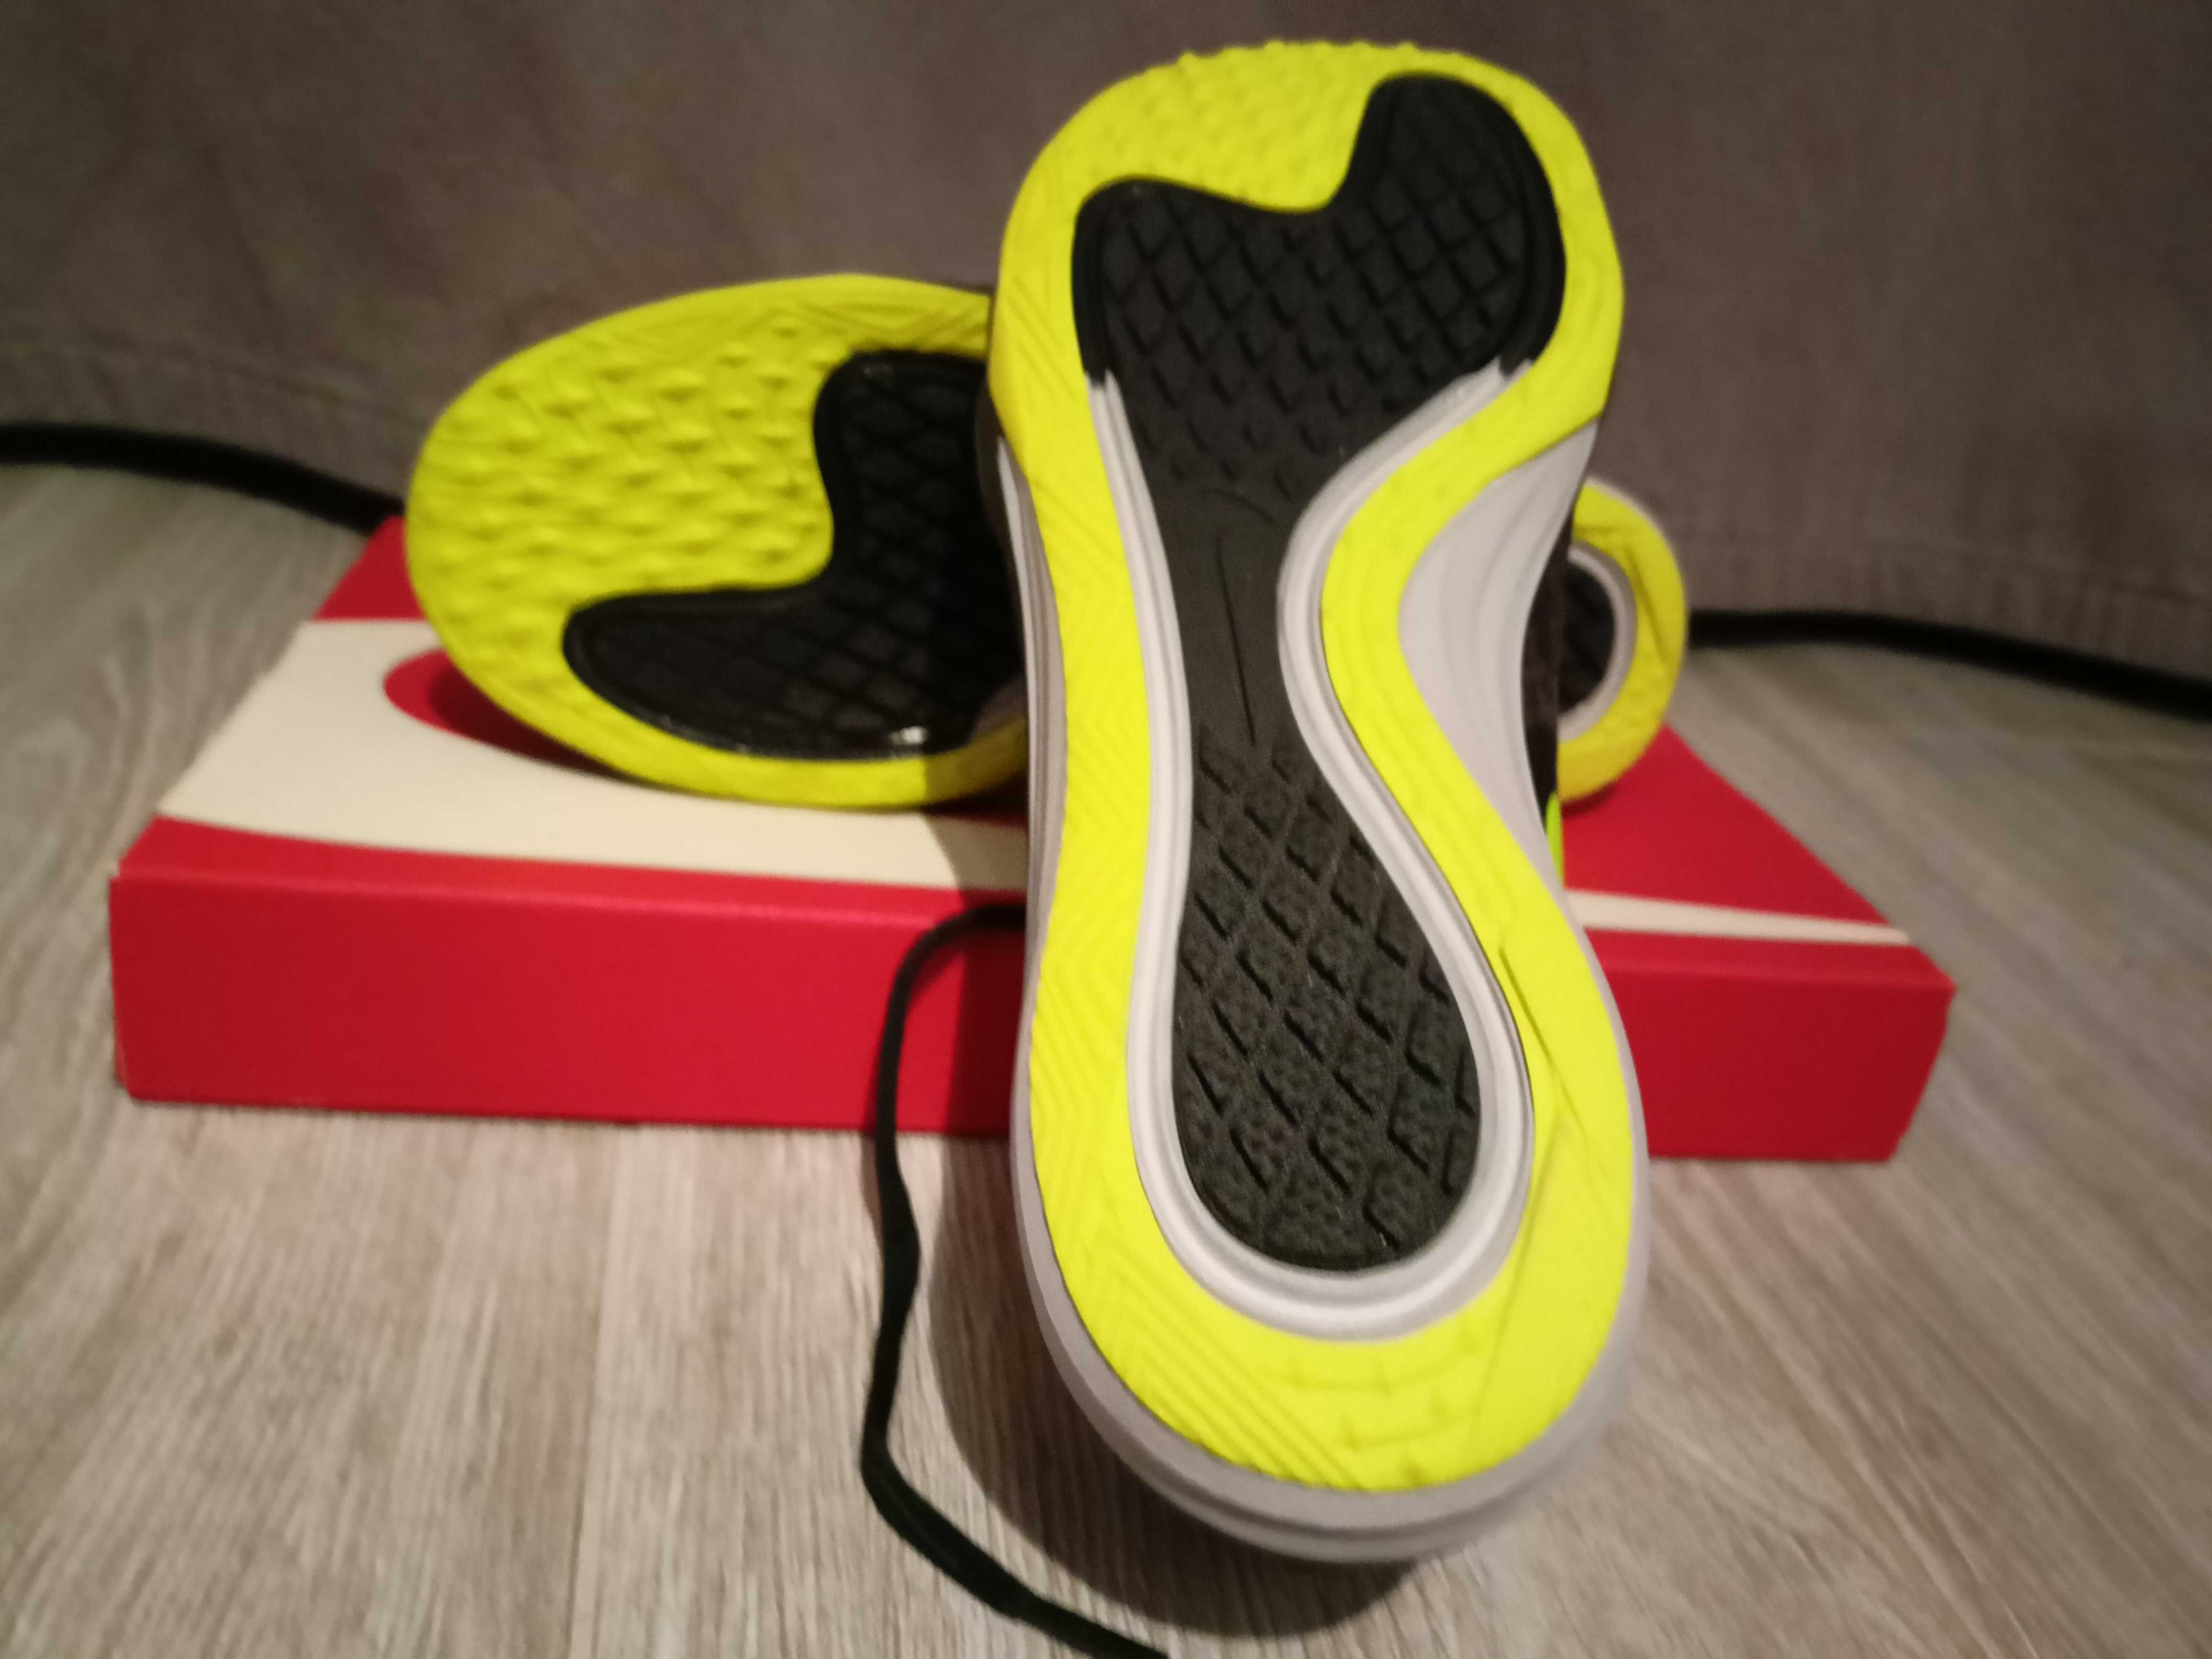 Buty Nike Dual Fusion TR 3 Print. Rozmiar UK 5,5, CM 25cm, EUR 39